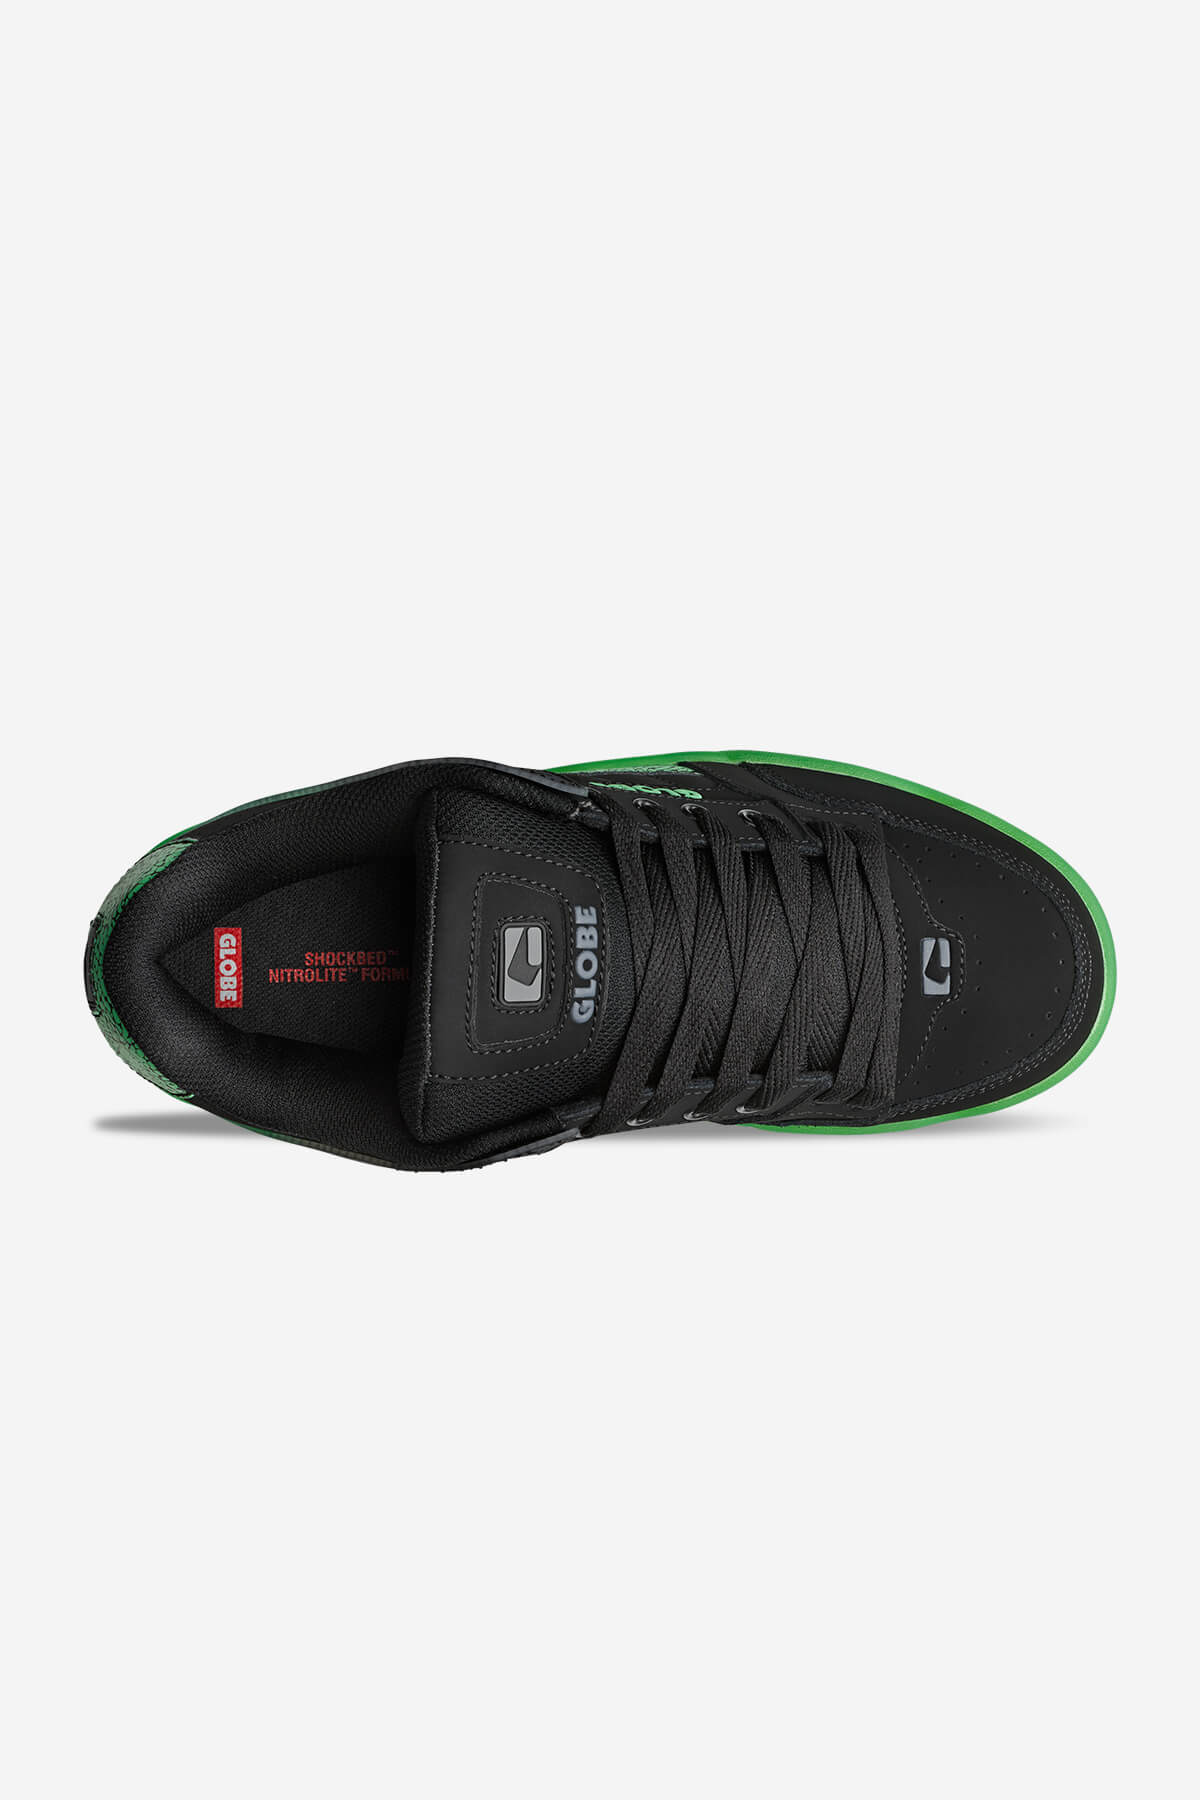 tilt black green stipple skate shoes